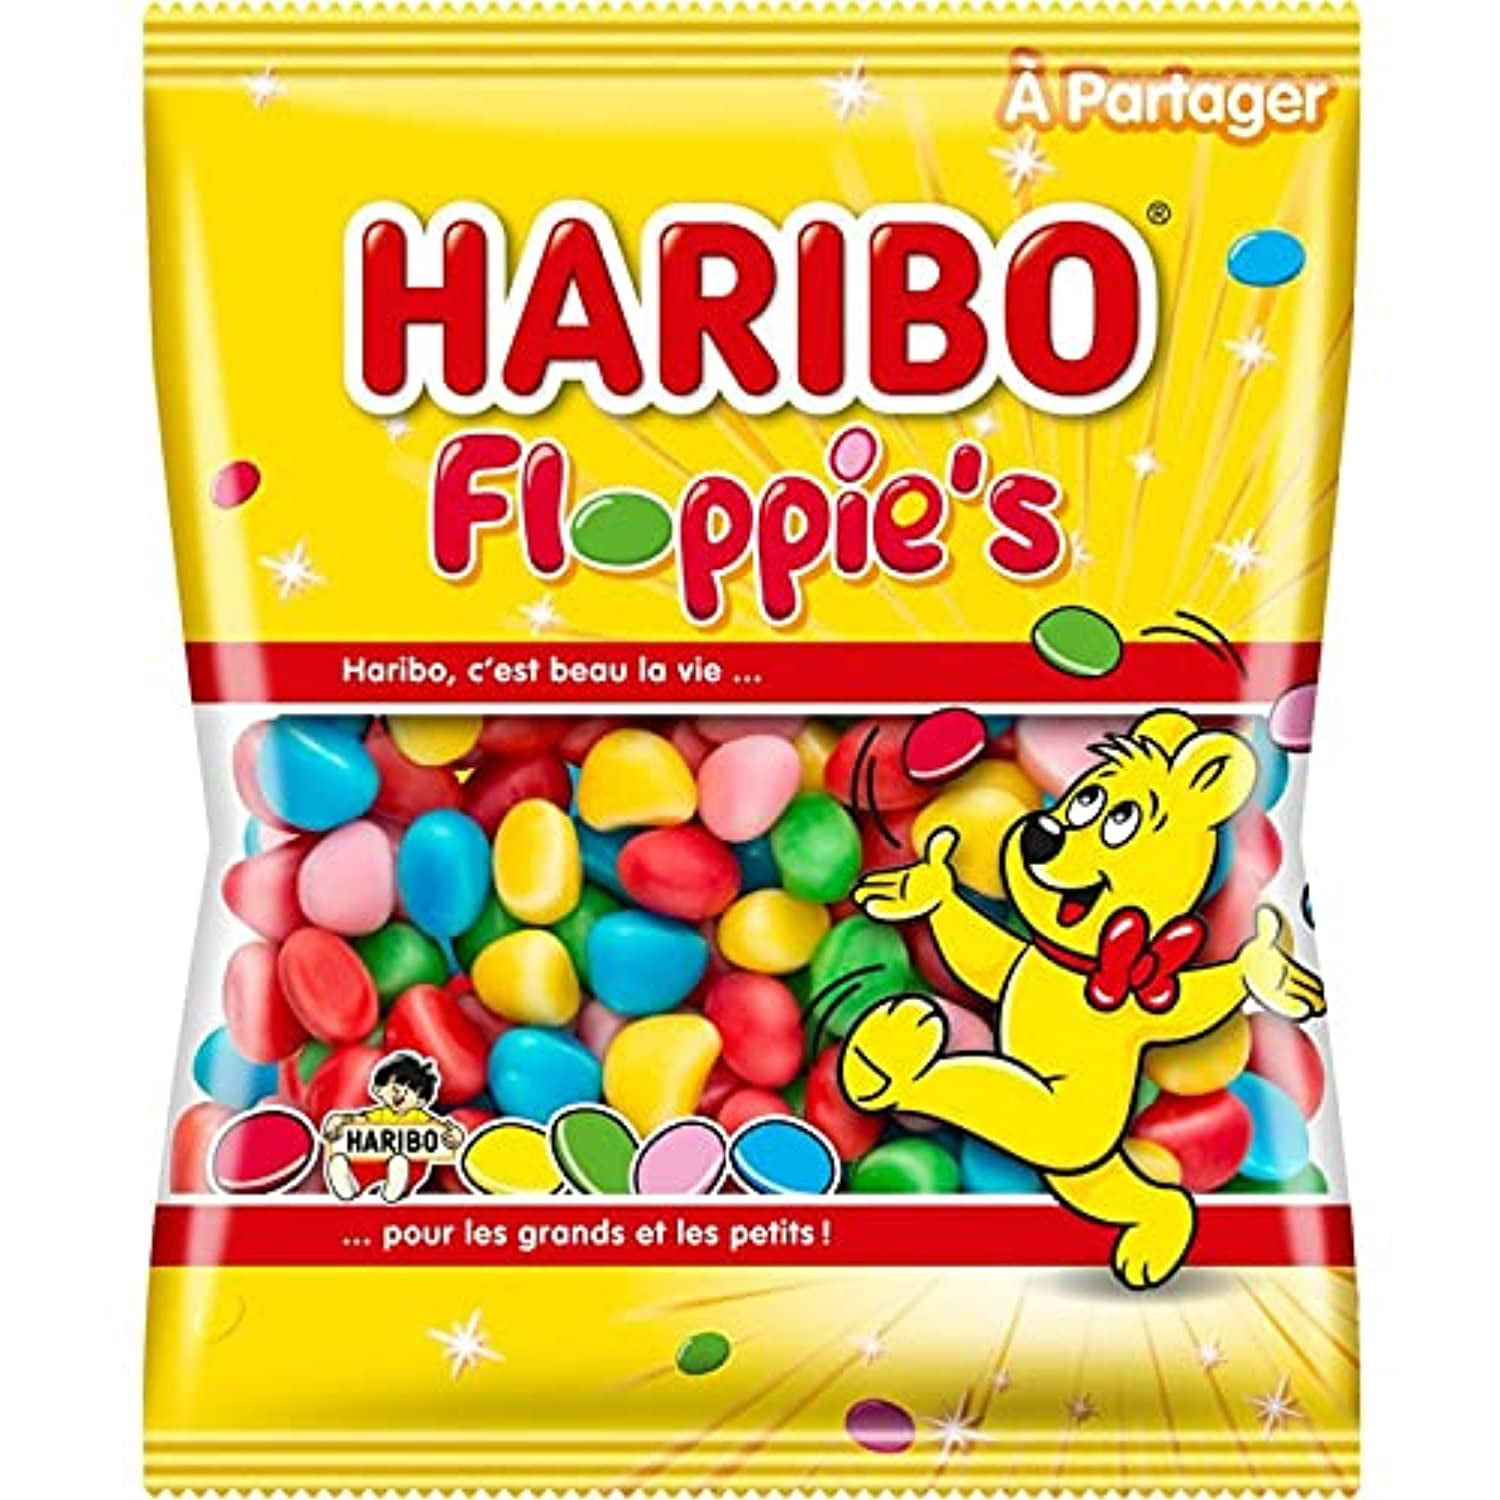 Floppie's Haribo, le bonbon Floppy maintenant de toutes les couleurs